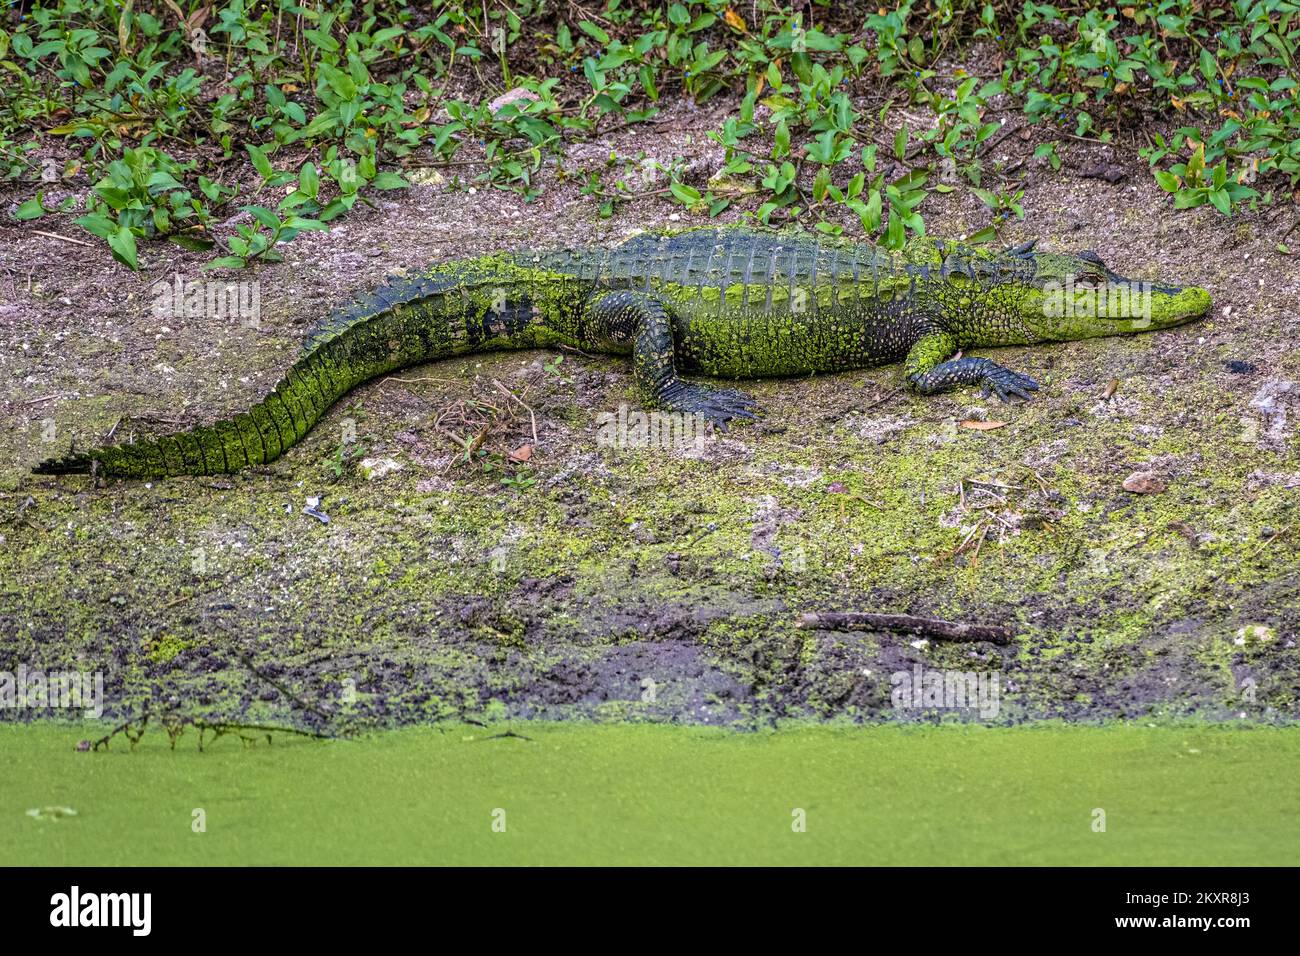 Alligator couvert d'algues vertes (Alligator mississippiensis) reposant sur une rive d'étang le long de Paynes Prairie près de Gainesville, Floride. (ÉTATS-UNIS) Banque D'Images